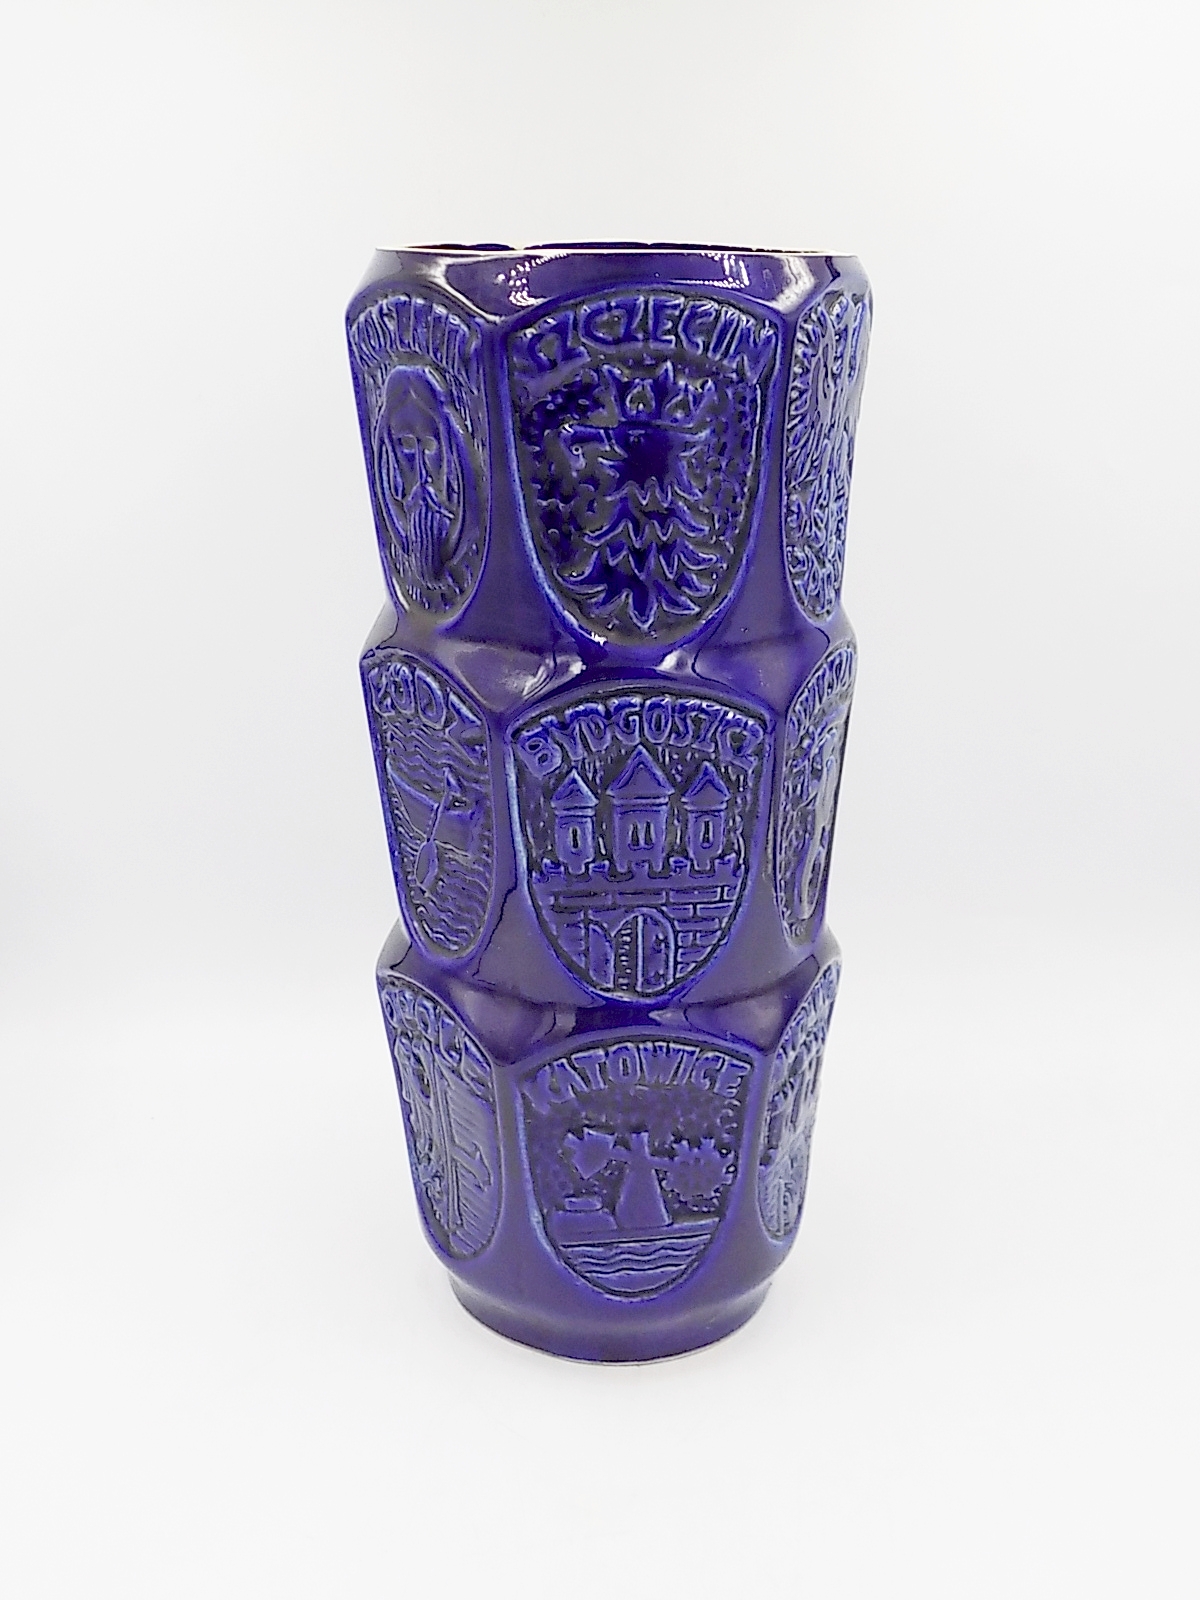 wz.633 wazon z herbami Włocławek Jan Sowiński zdjęcie 1